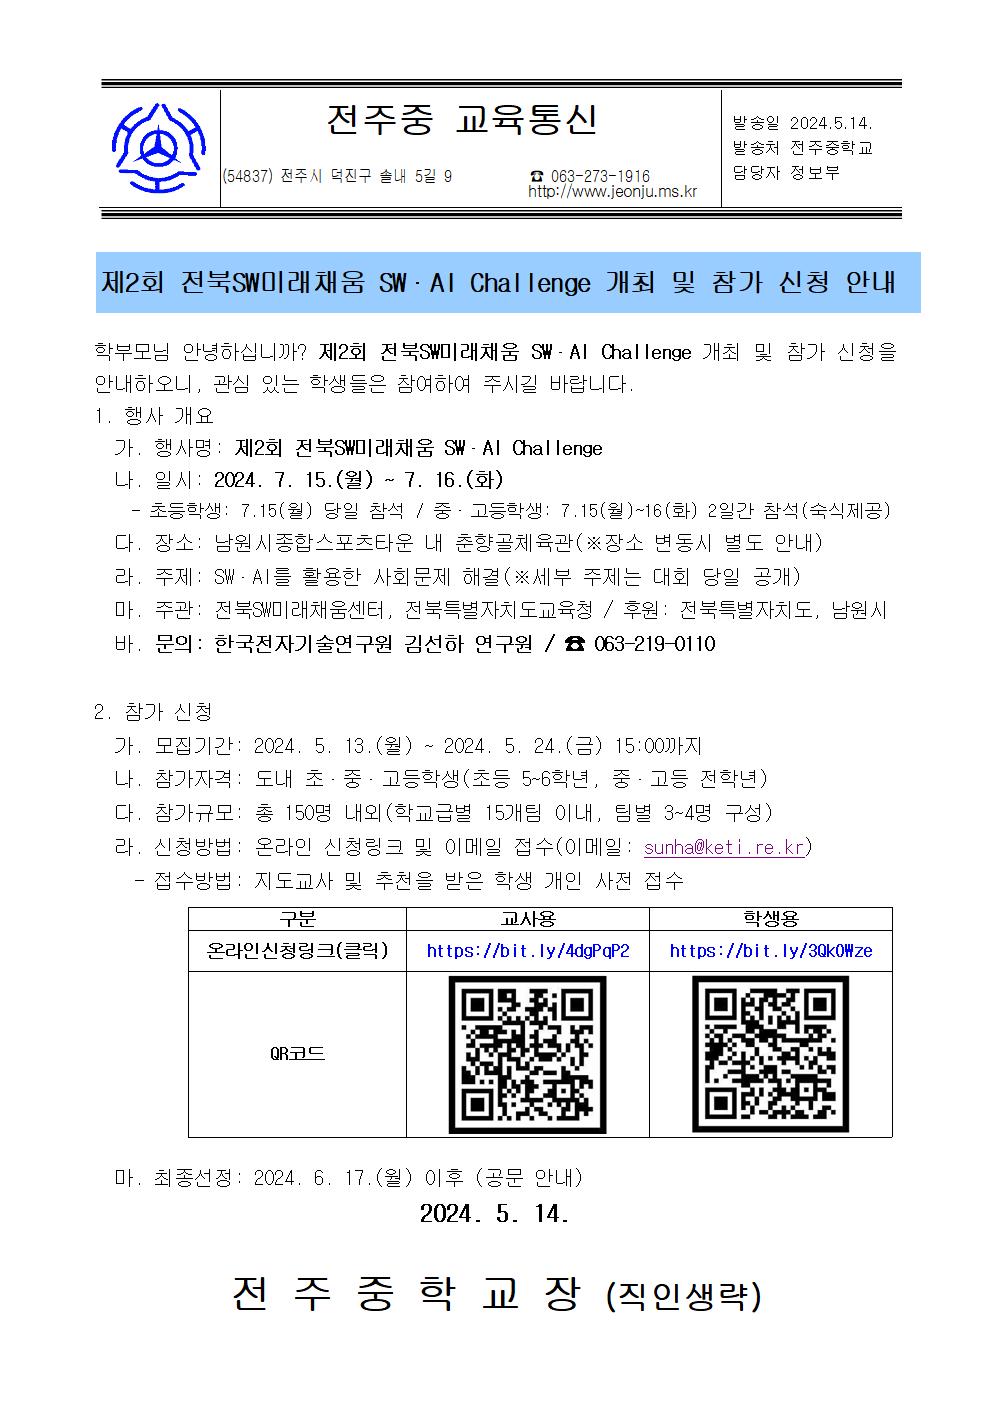 제2회 전북 SW미래채움 SWAI Challenge 개최 및 참가 신청 안내 가정통신문001